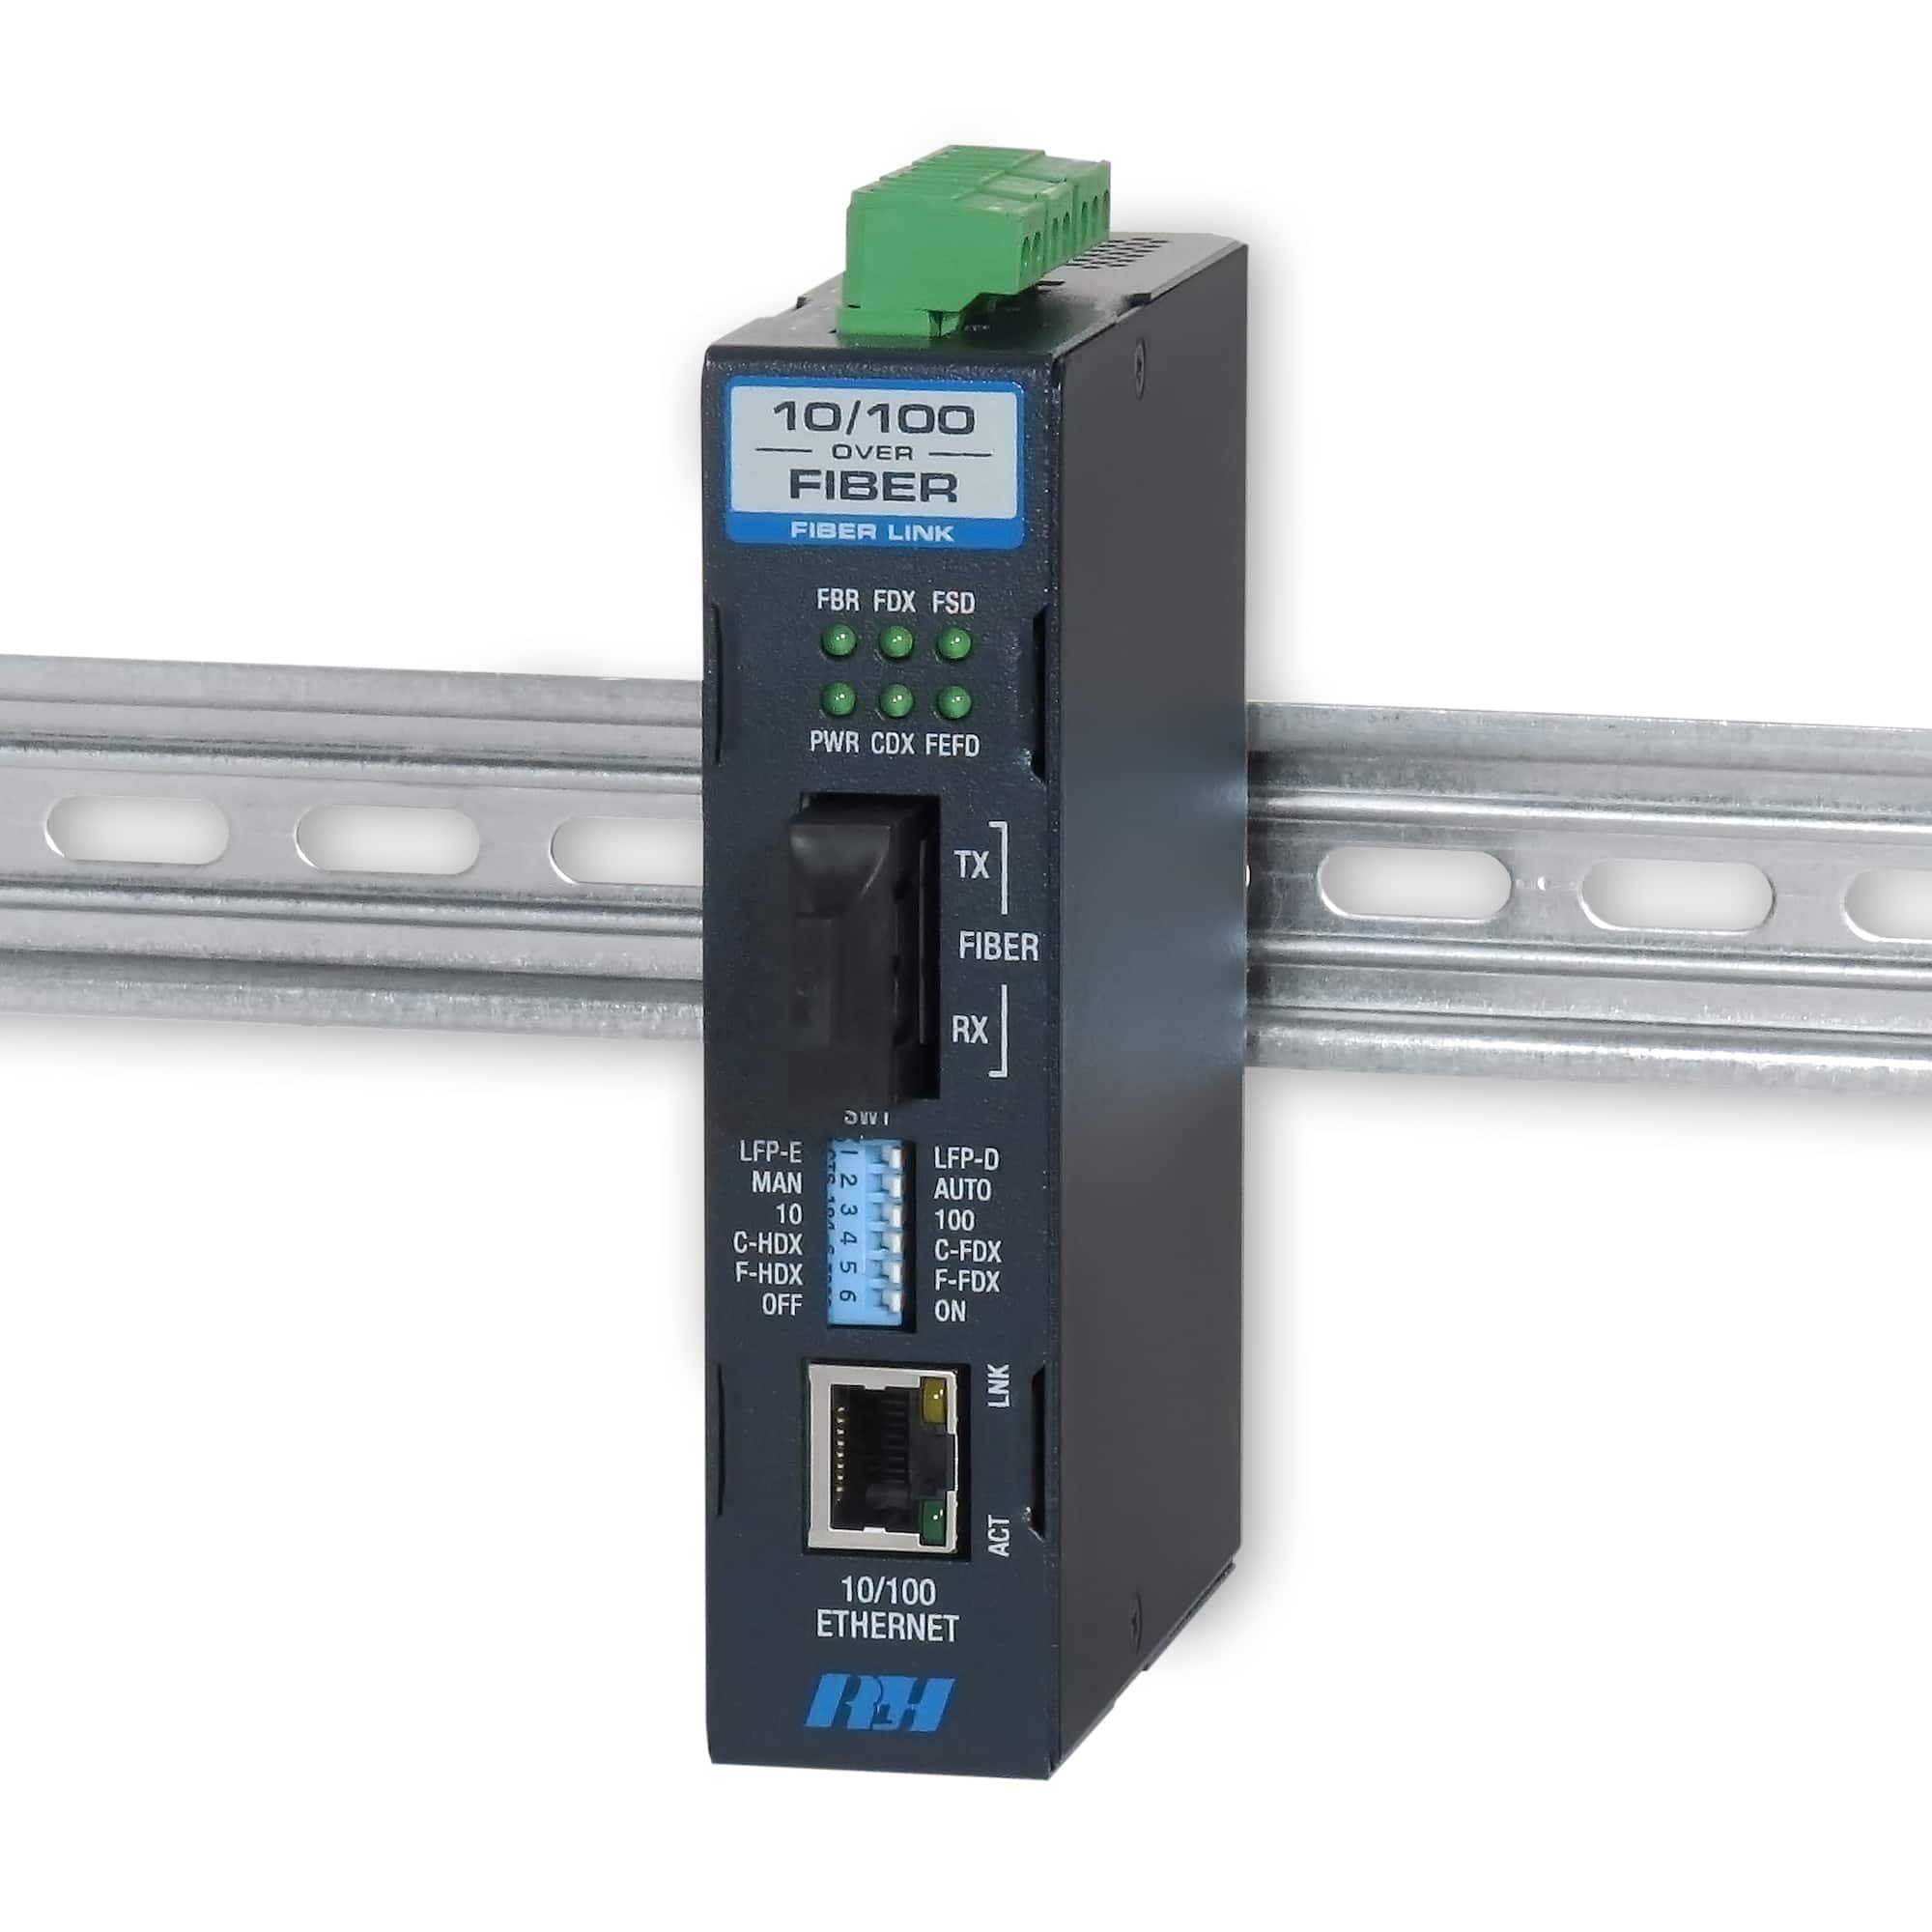 10/100 Enhanced Ethernet Media Converter on DIN Rail